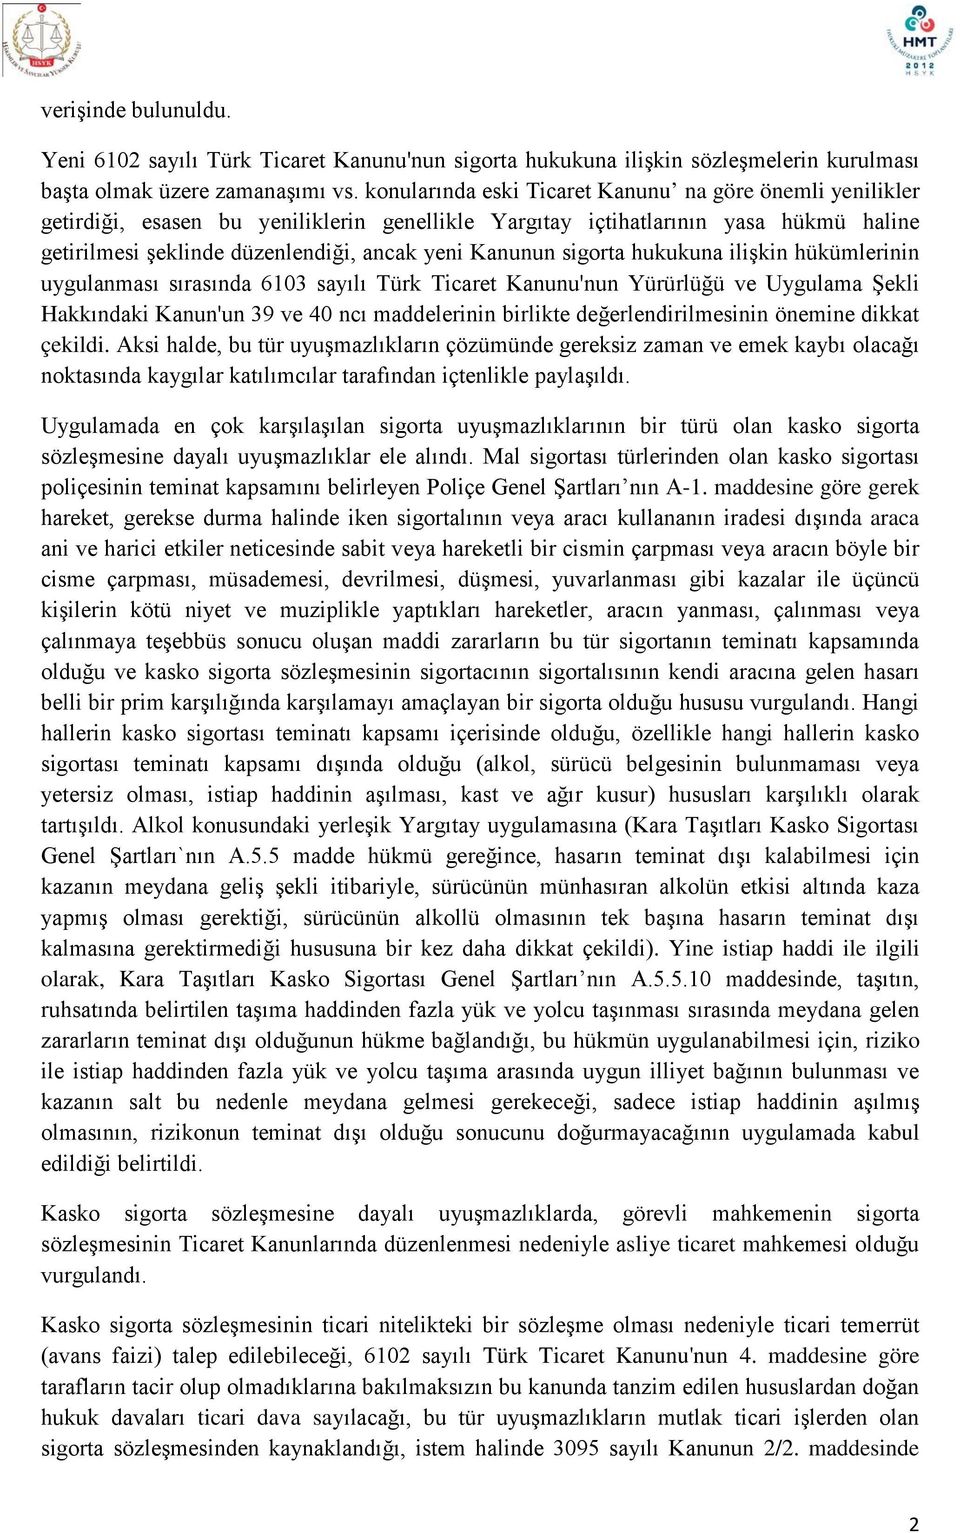 sigorta hukukuna ilişkin hükümlerinin uygulanması sırasında 6103 sayılı Türk Ticaret Kanunu'nun Yürürlüğü ve Uygulama Şekli Hakkındaki Kanun'un 39 ve 40 ncı maddelerinin birlikte değerlendirilmesinin